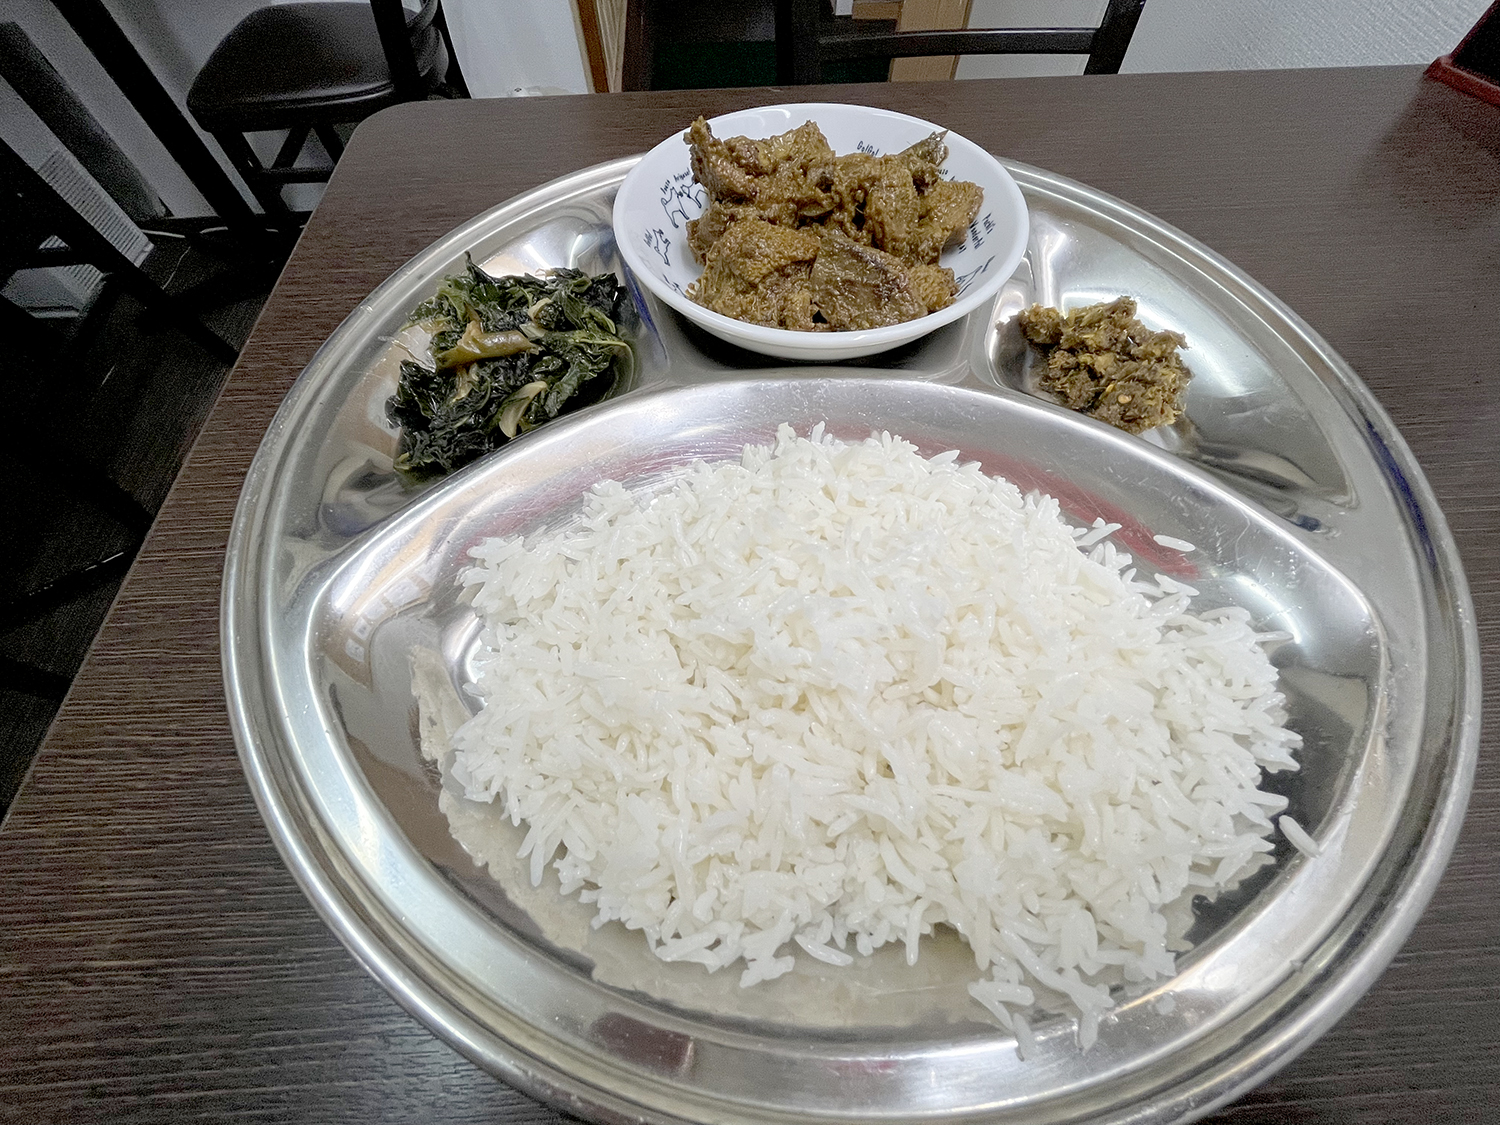 マトンボット中央の小皿がメイン。副菜のボルタ（右）とバジ（左）もついてくる。お米は店頭でも売られていたバスマティライスだ。